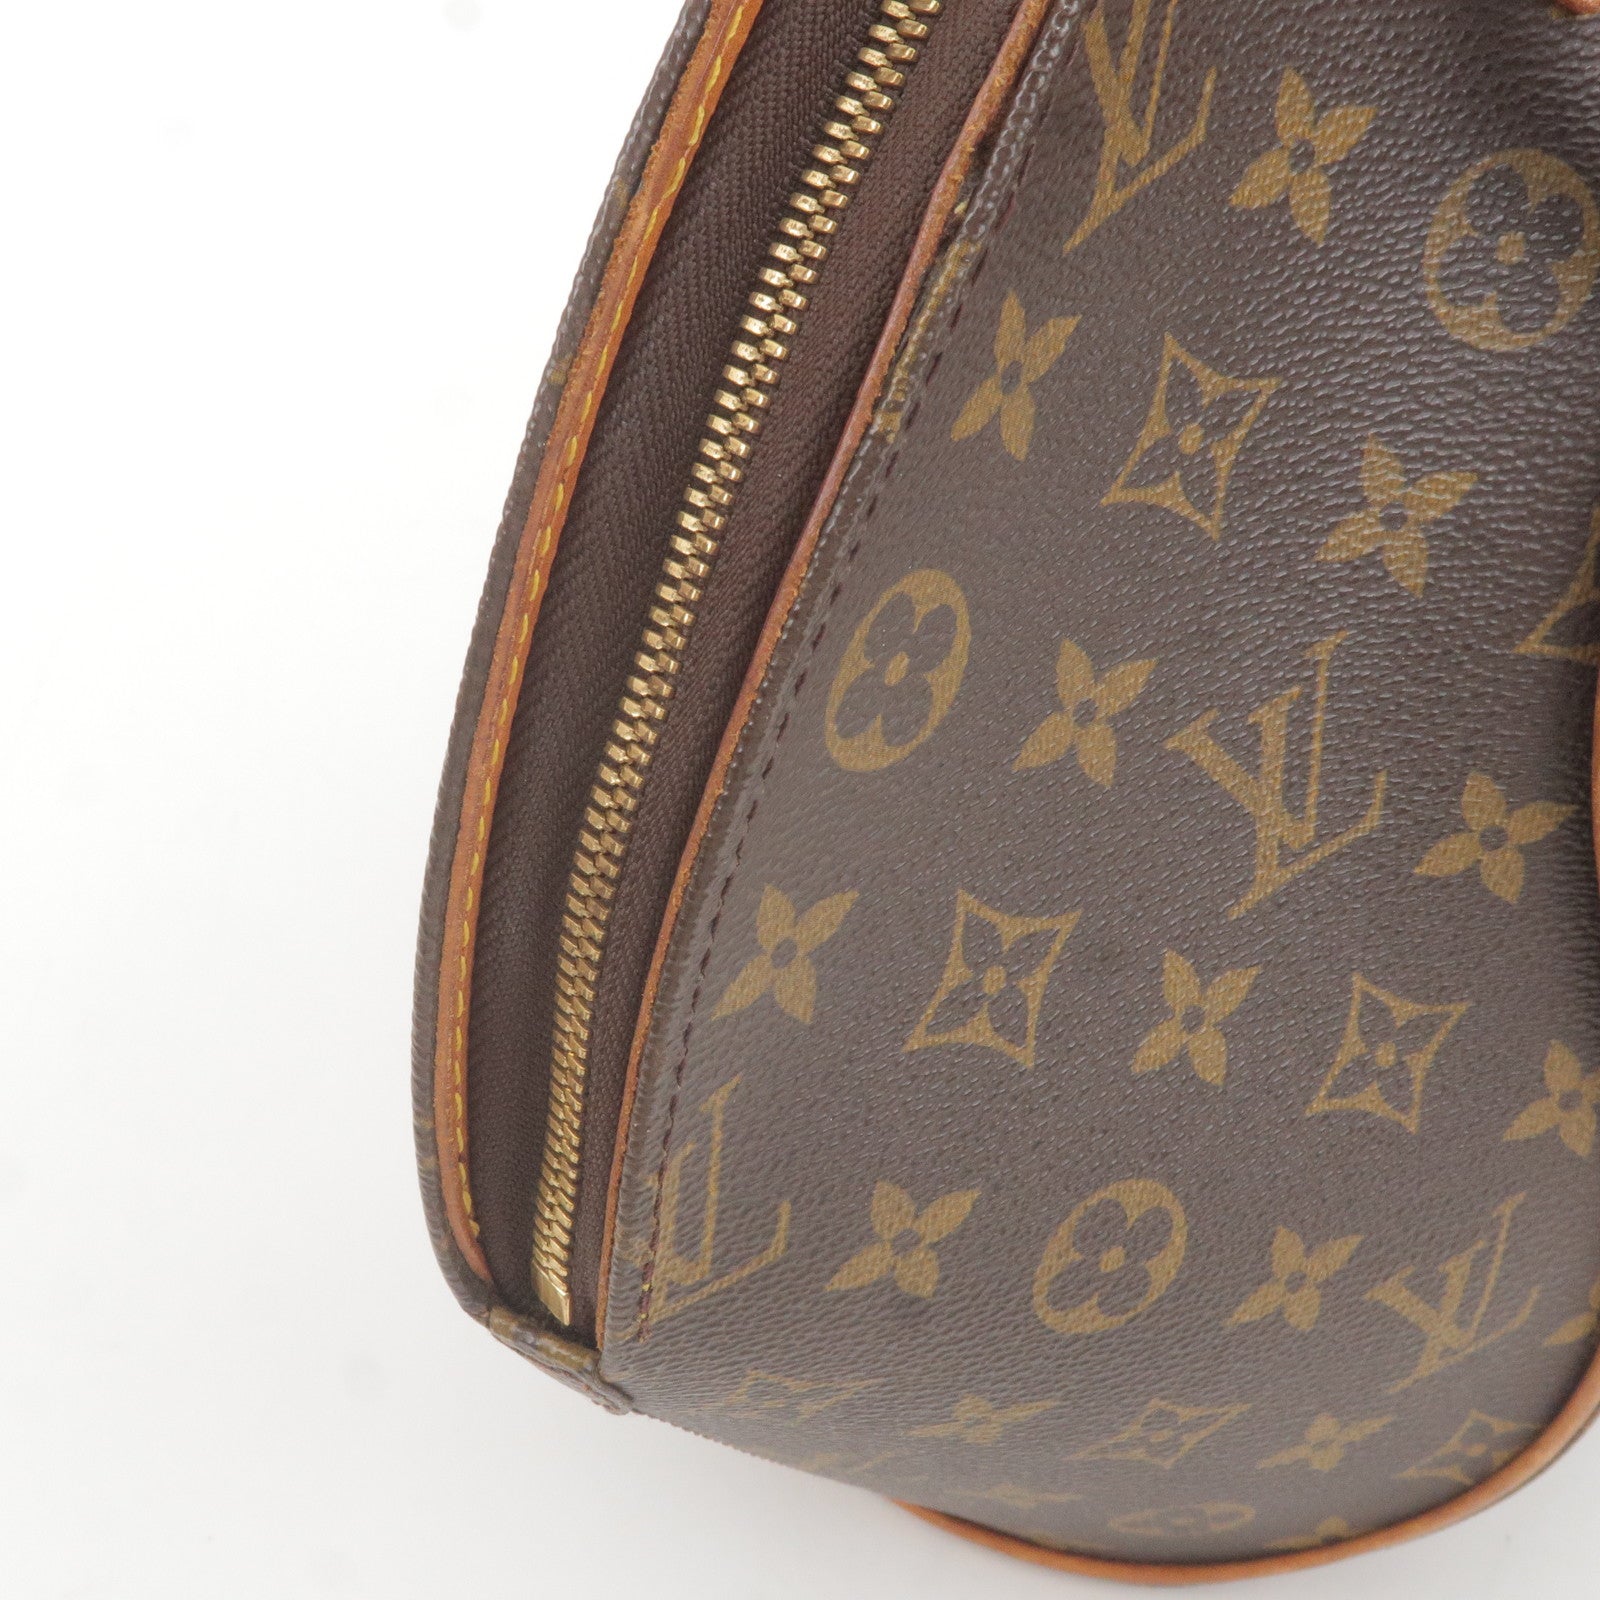 Ellipse - Monogram - Bag - Louis - Louis Vuitton portefeuille Elise en  toile monogram et cuir marron - Vuitton - M51126 – Сумка шопер louis vuitton  - Hand - MM